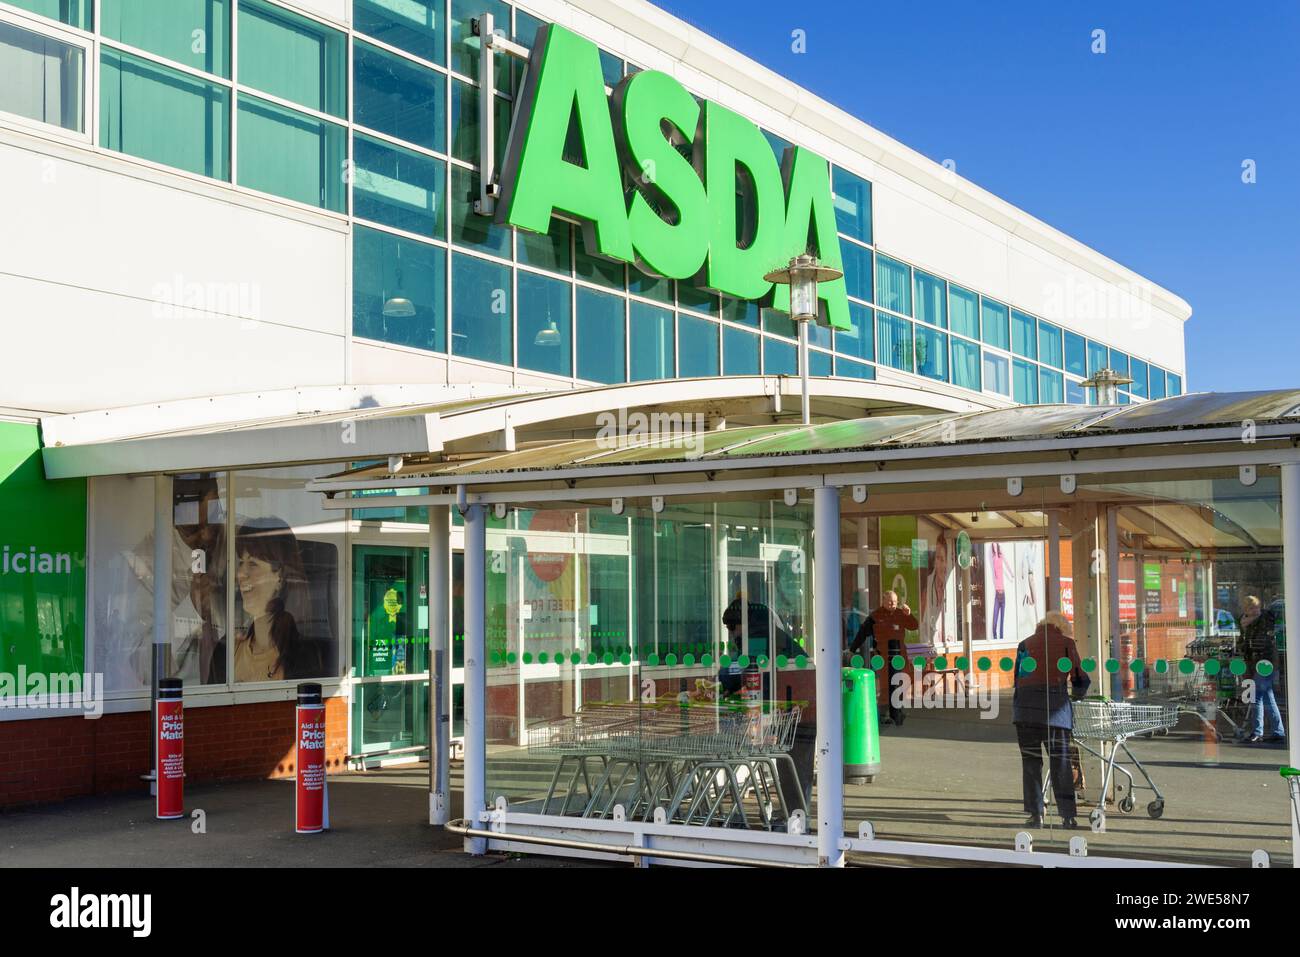 Magasin Asda entrée du magasin Asda logo signe Asda uk Asda Supermarket Derbyshire england uk gb europe Banque D'Images